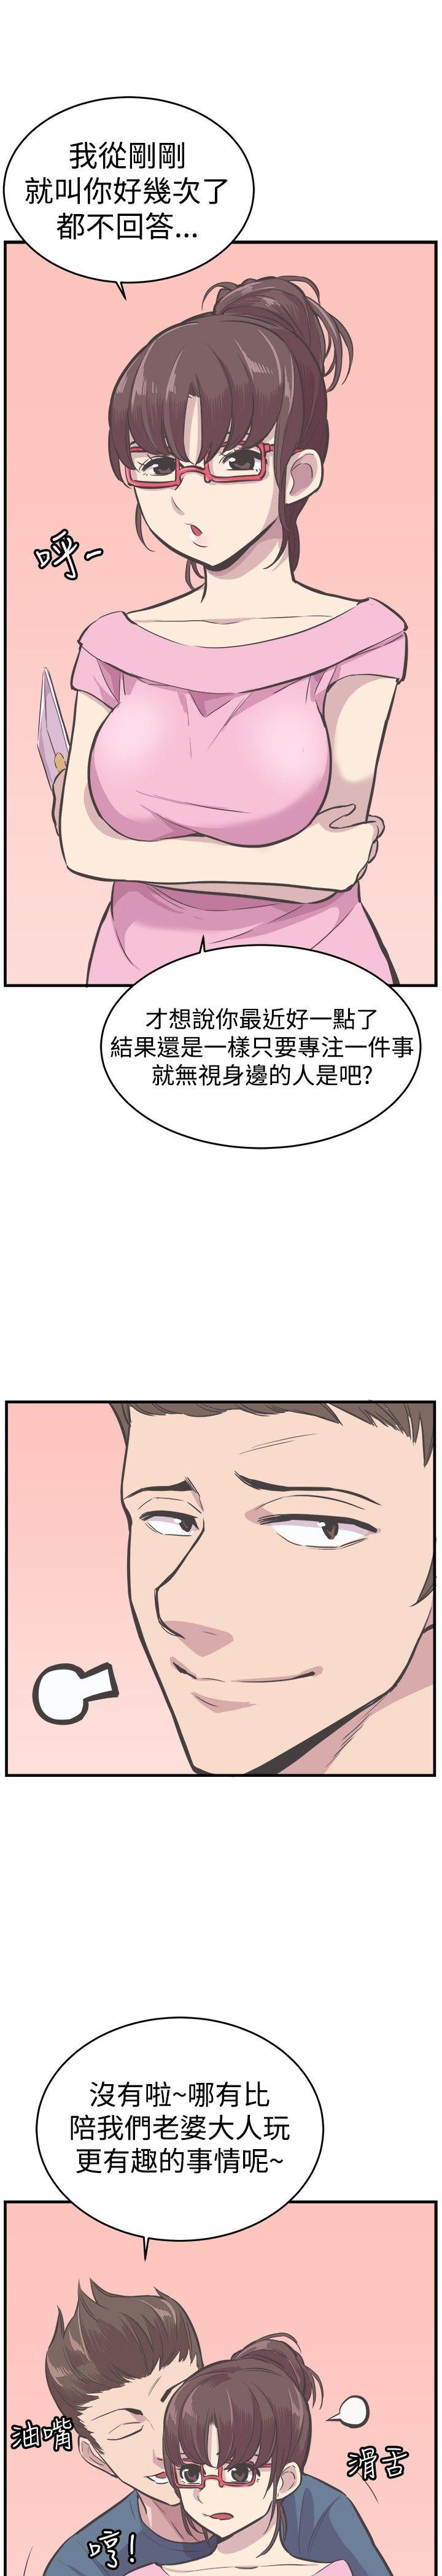 韩国污漫画 青春男女(完結) 最终话 21